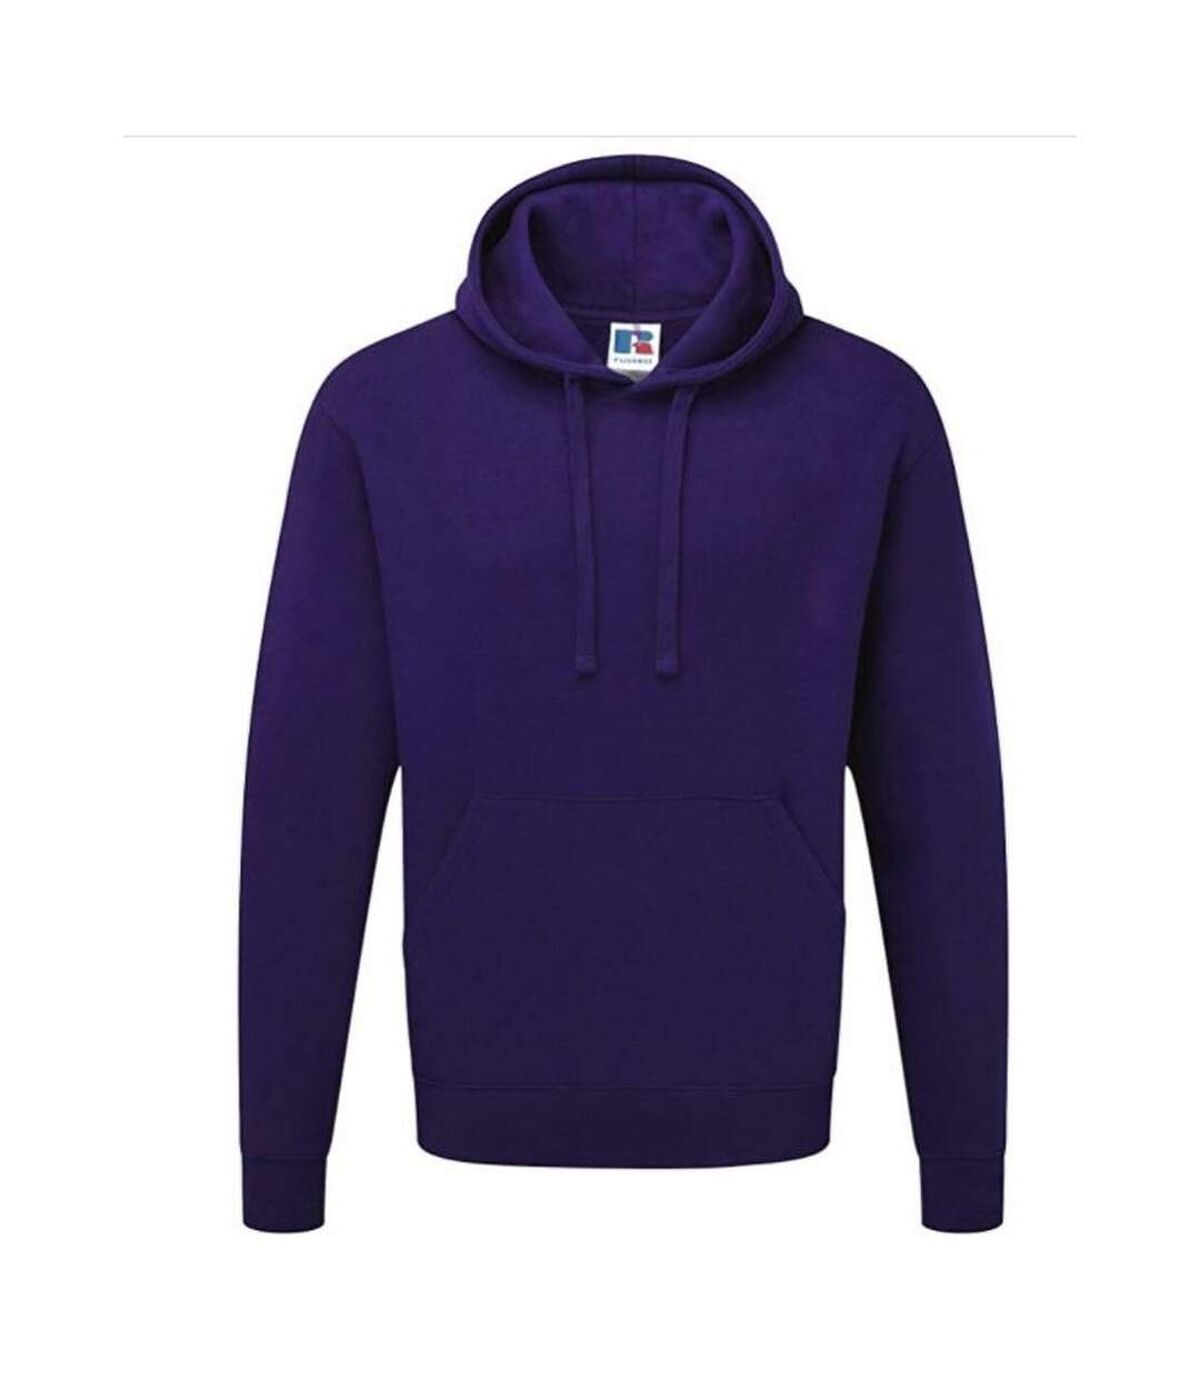 Russell Colour Mens Hooded Sweatshirt / Hoodie (Purple) - UTBC568